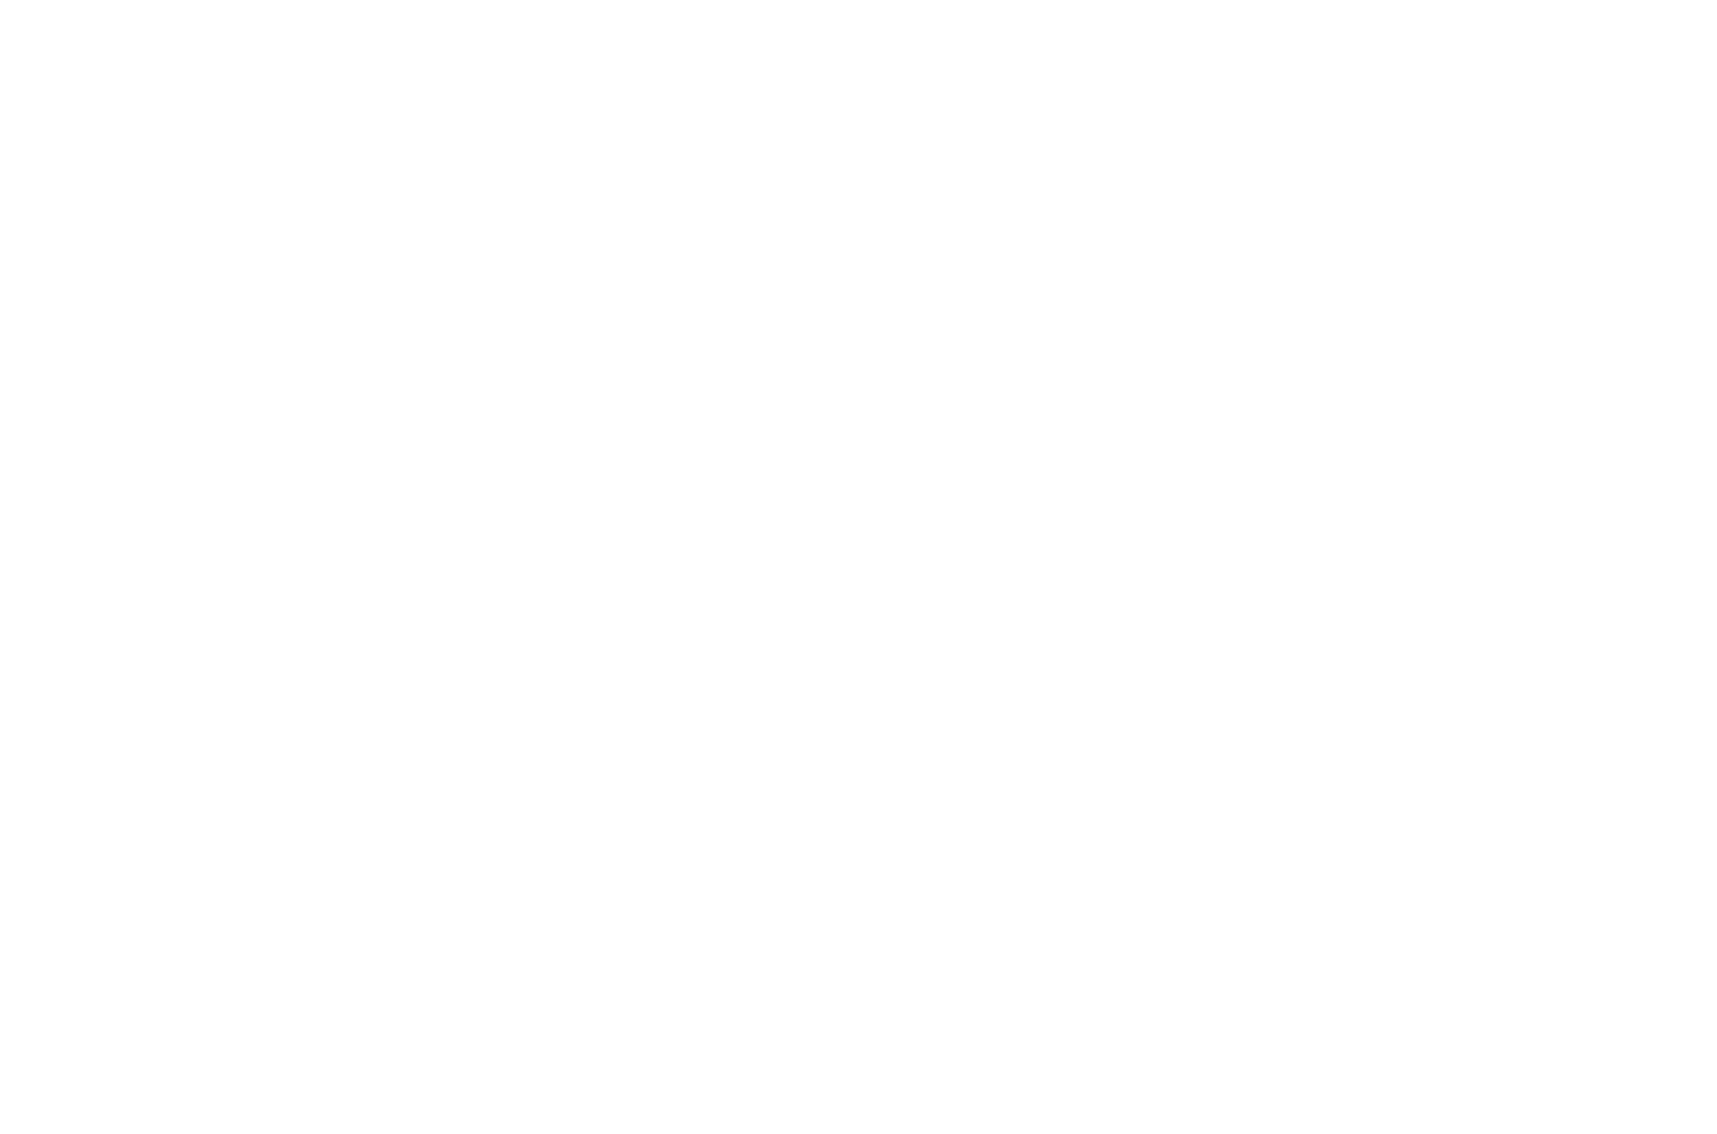 VTC Group